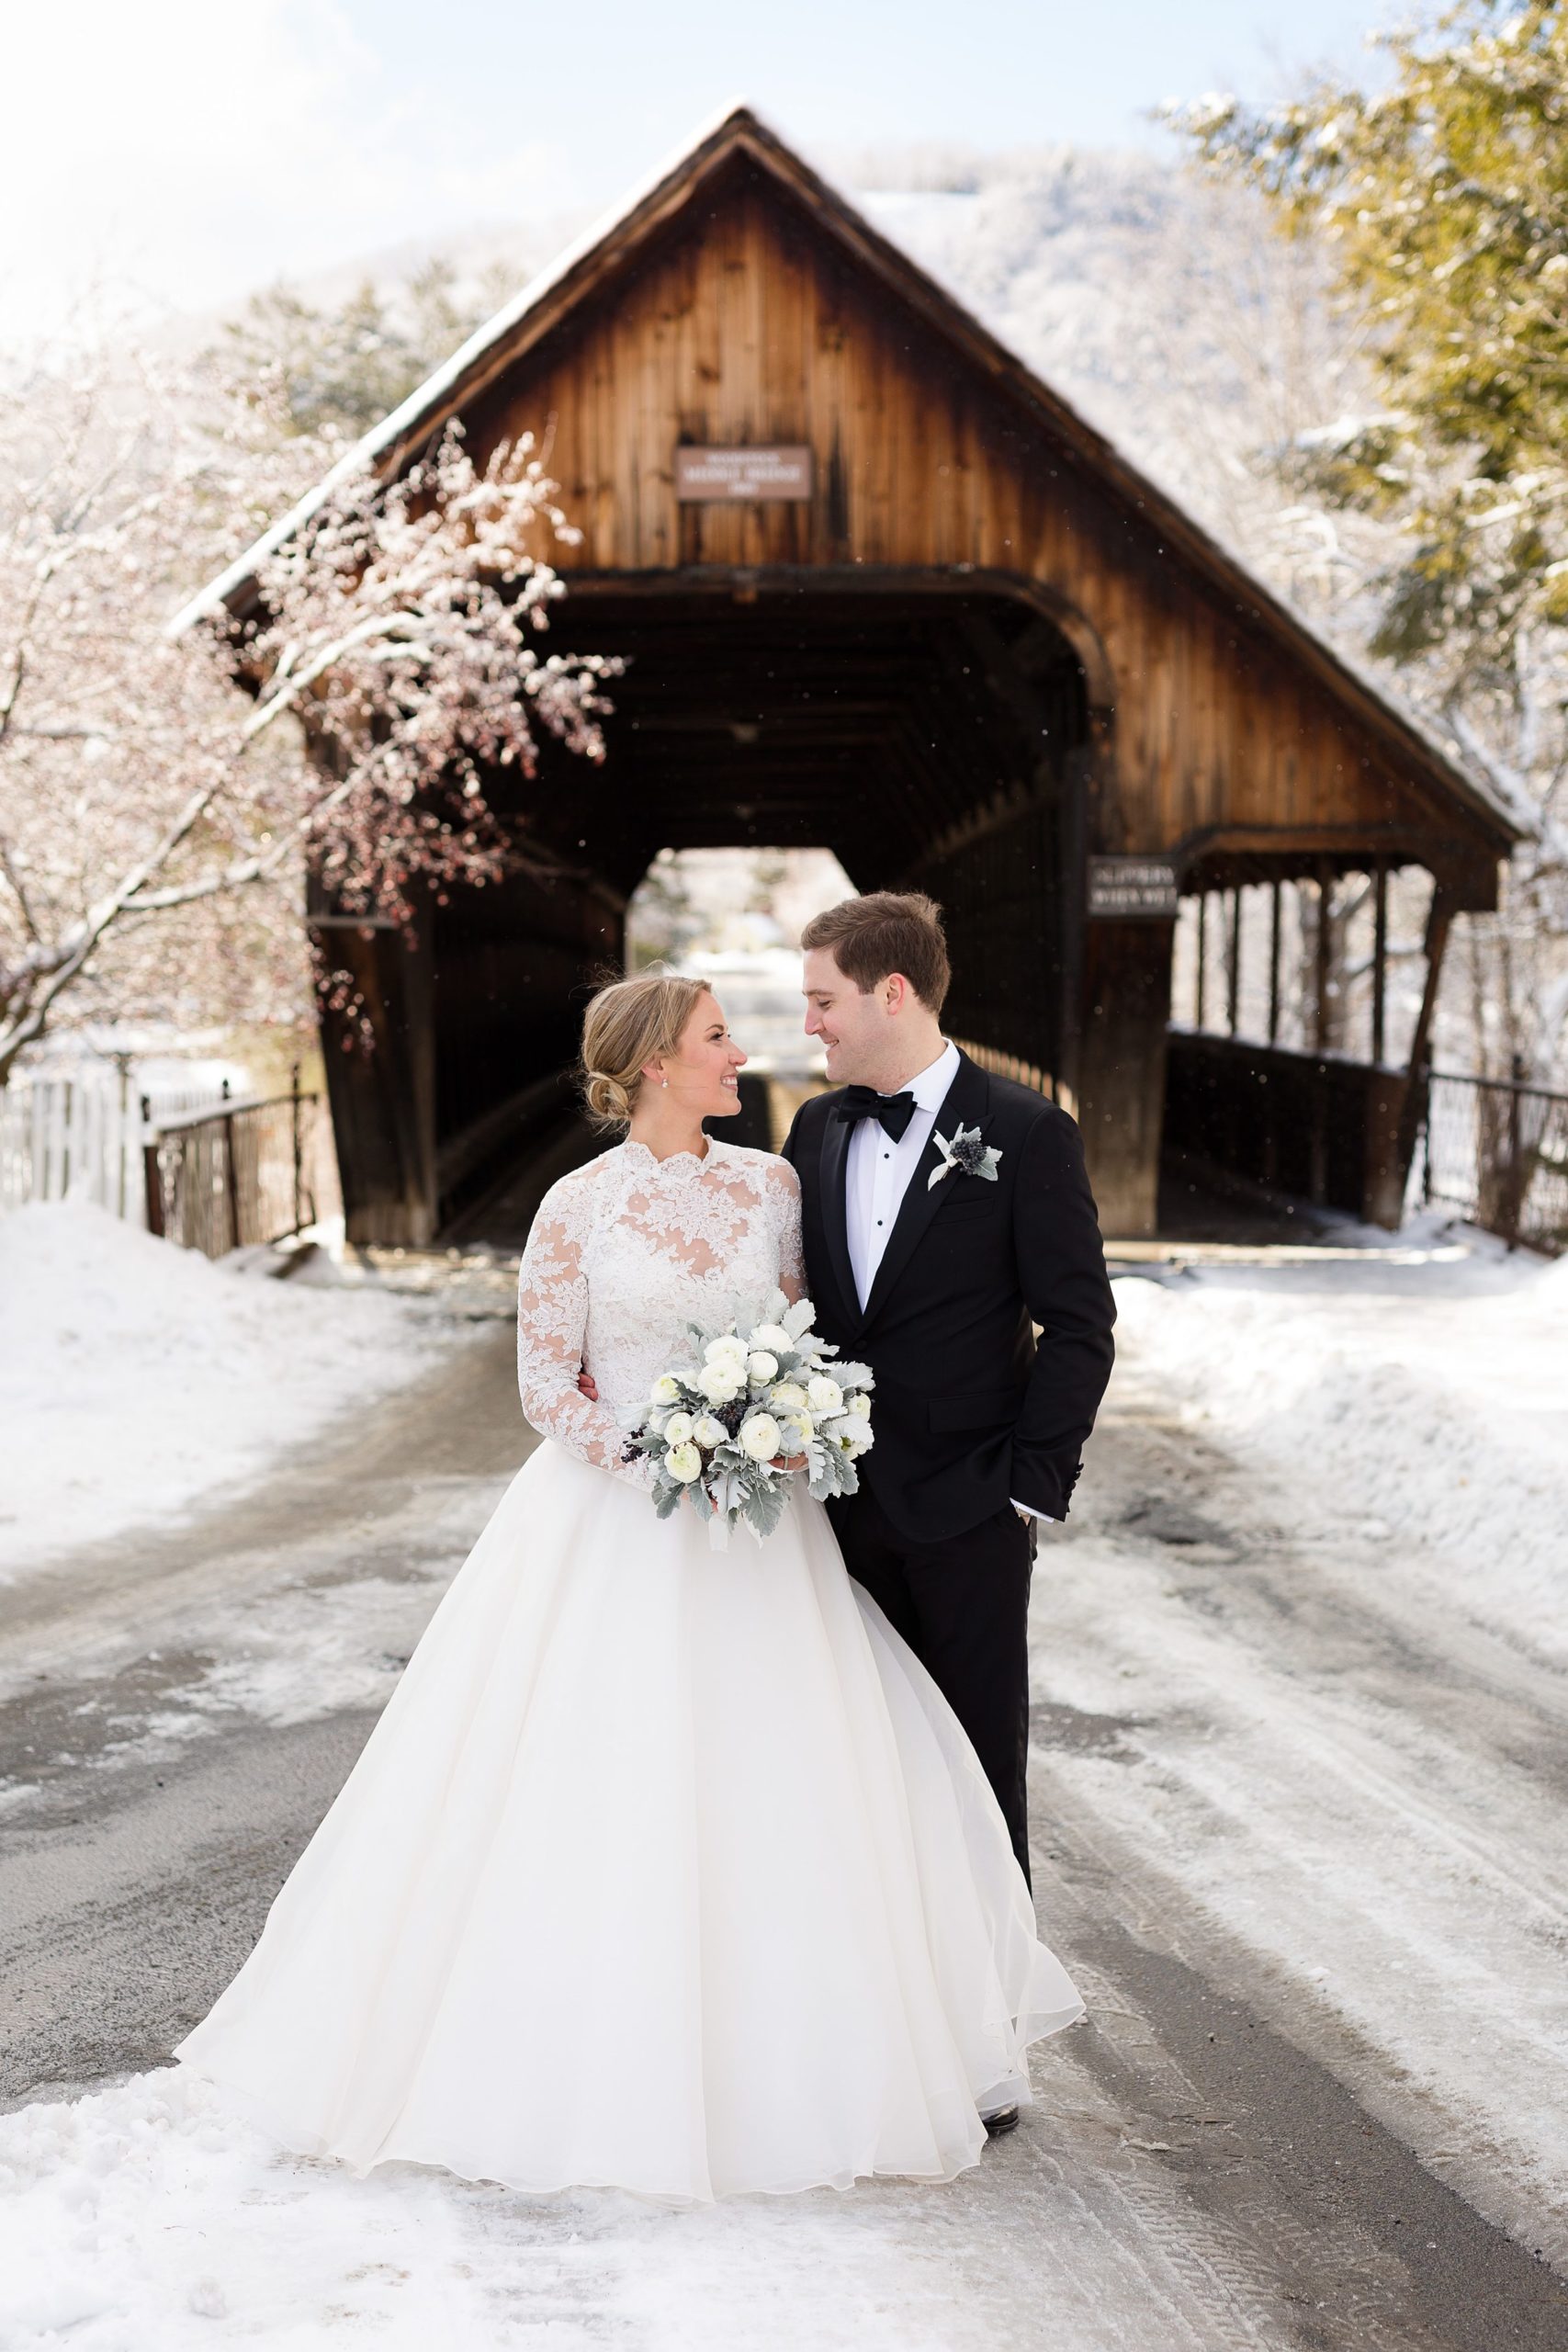 Bride and groom standing in front of wooden bridge at winter wedding